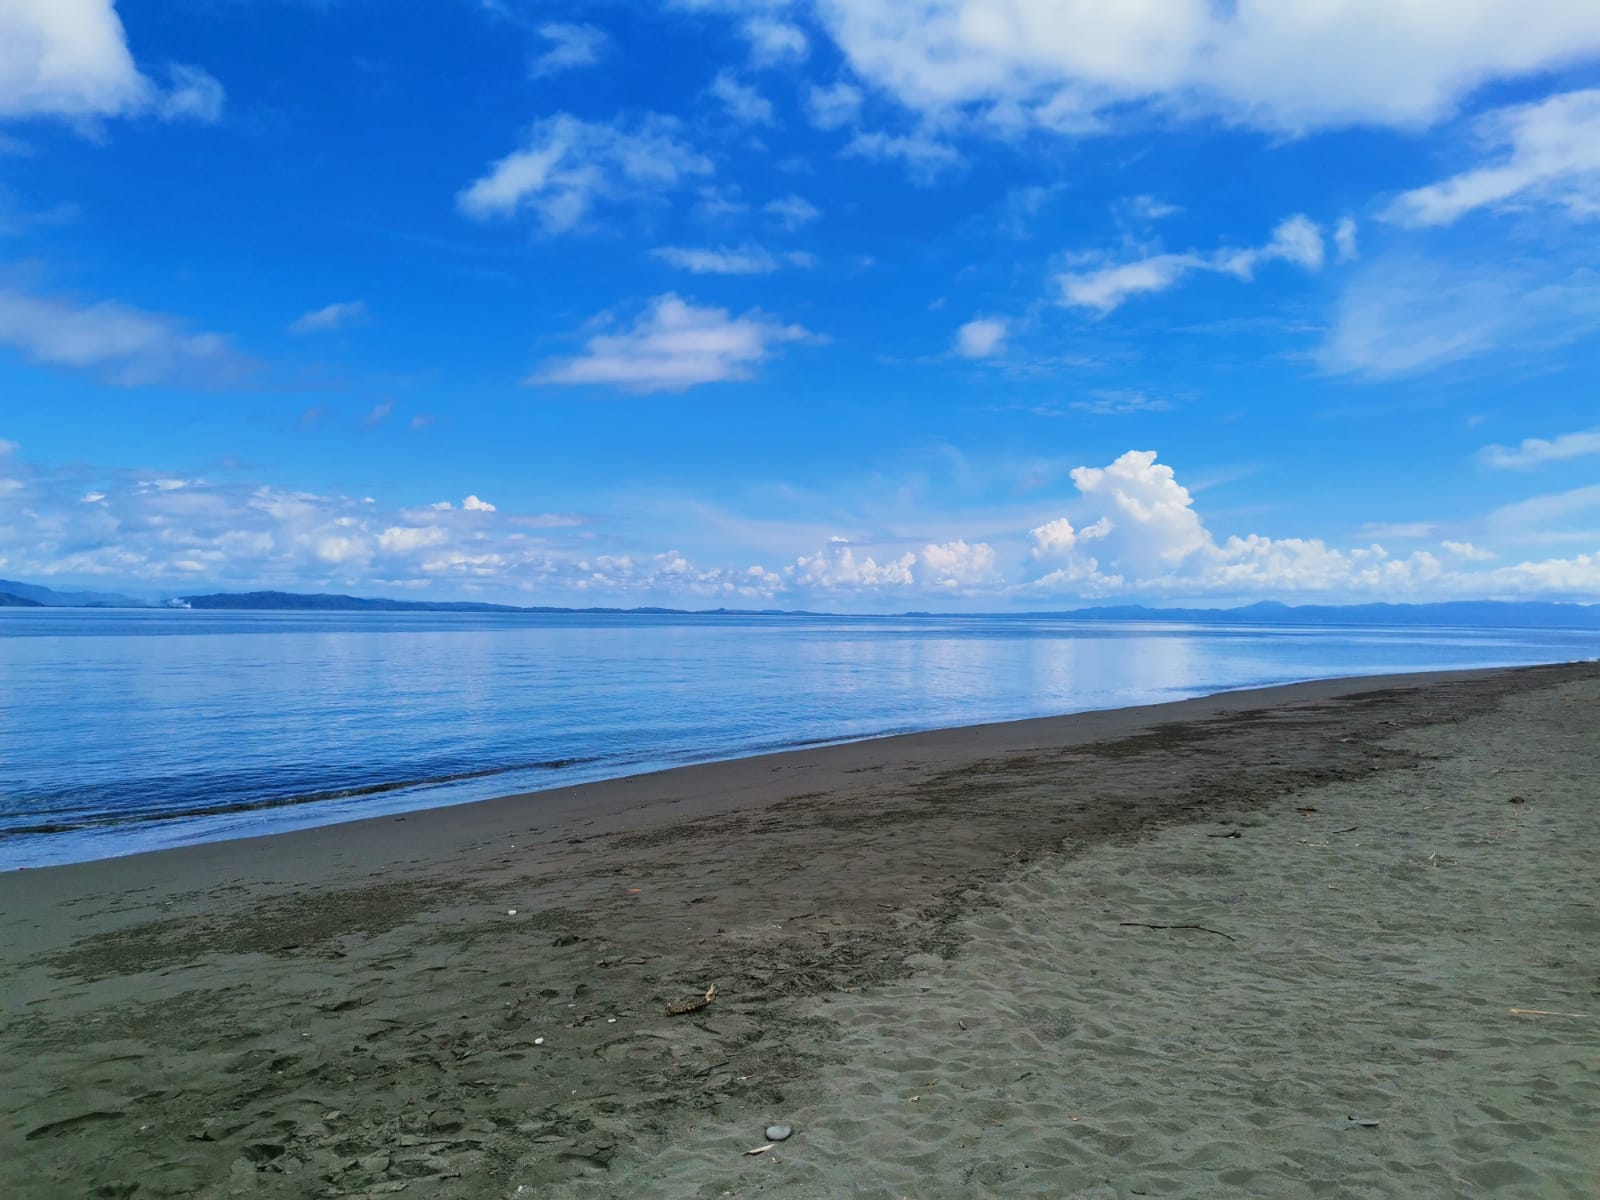 Foto de Playa Puntarenitas com areia marrom superfície